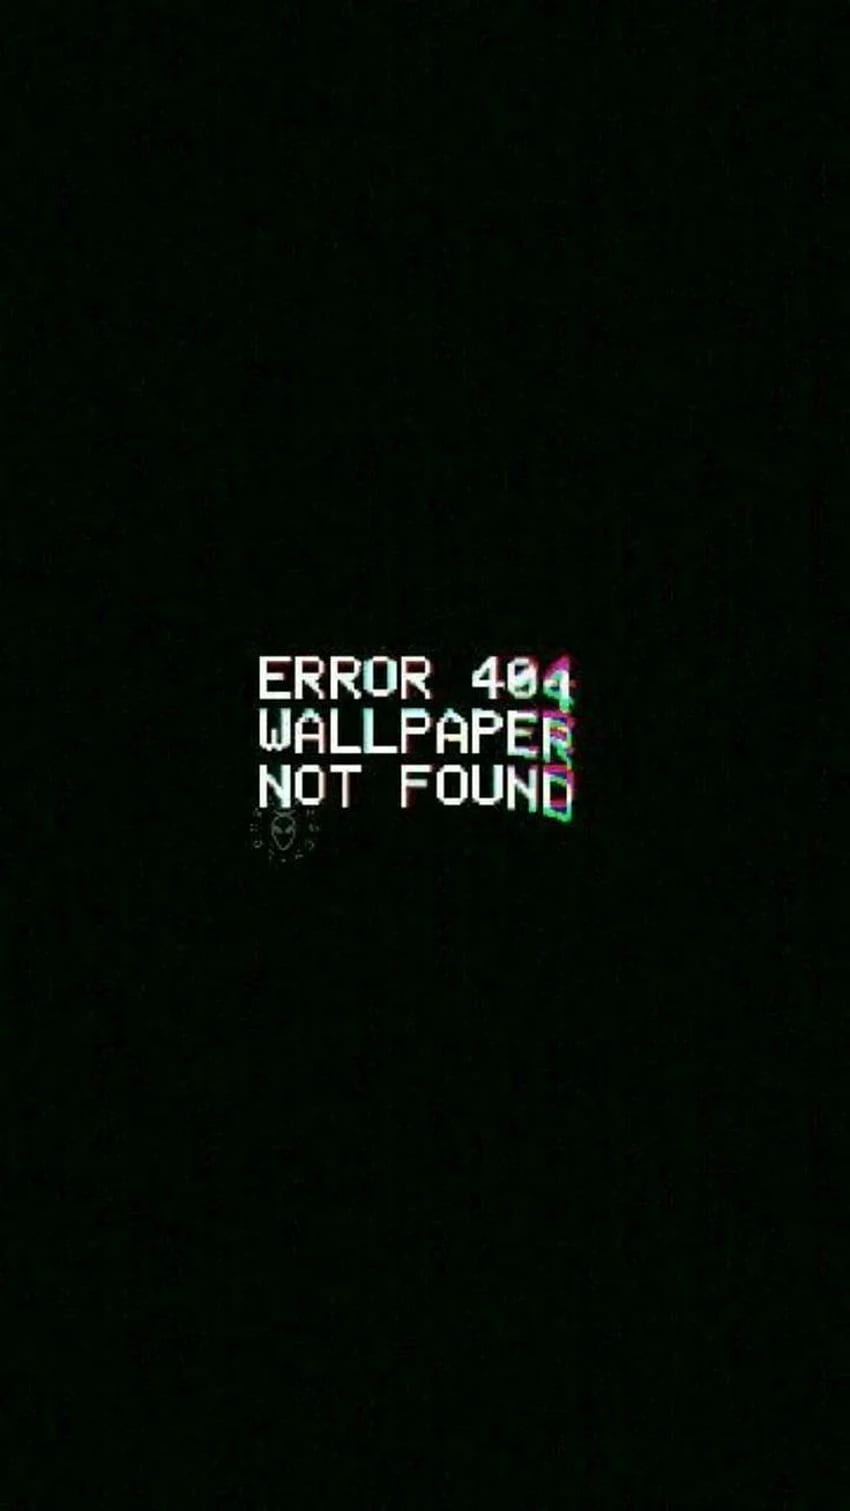 iPhone Error, Error Message HD phone wallpaper